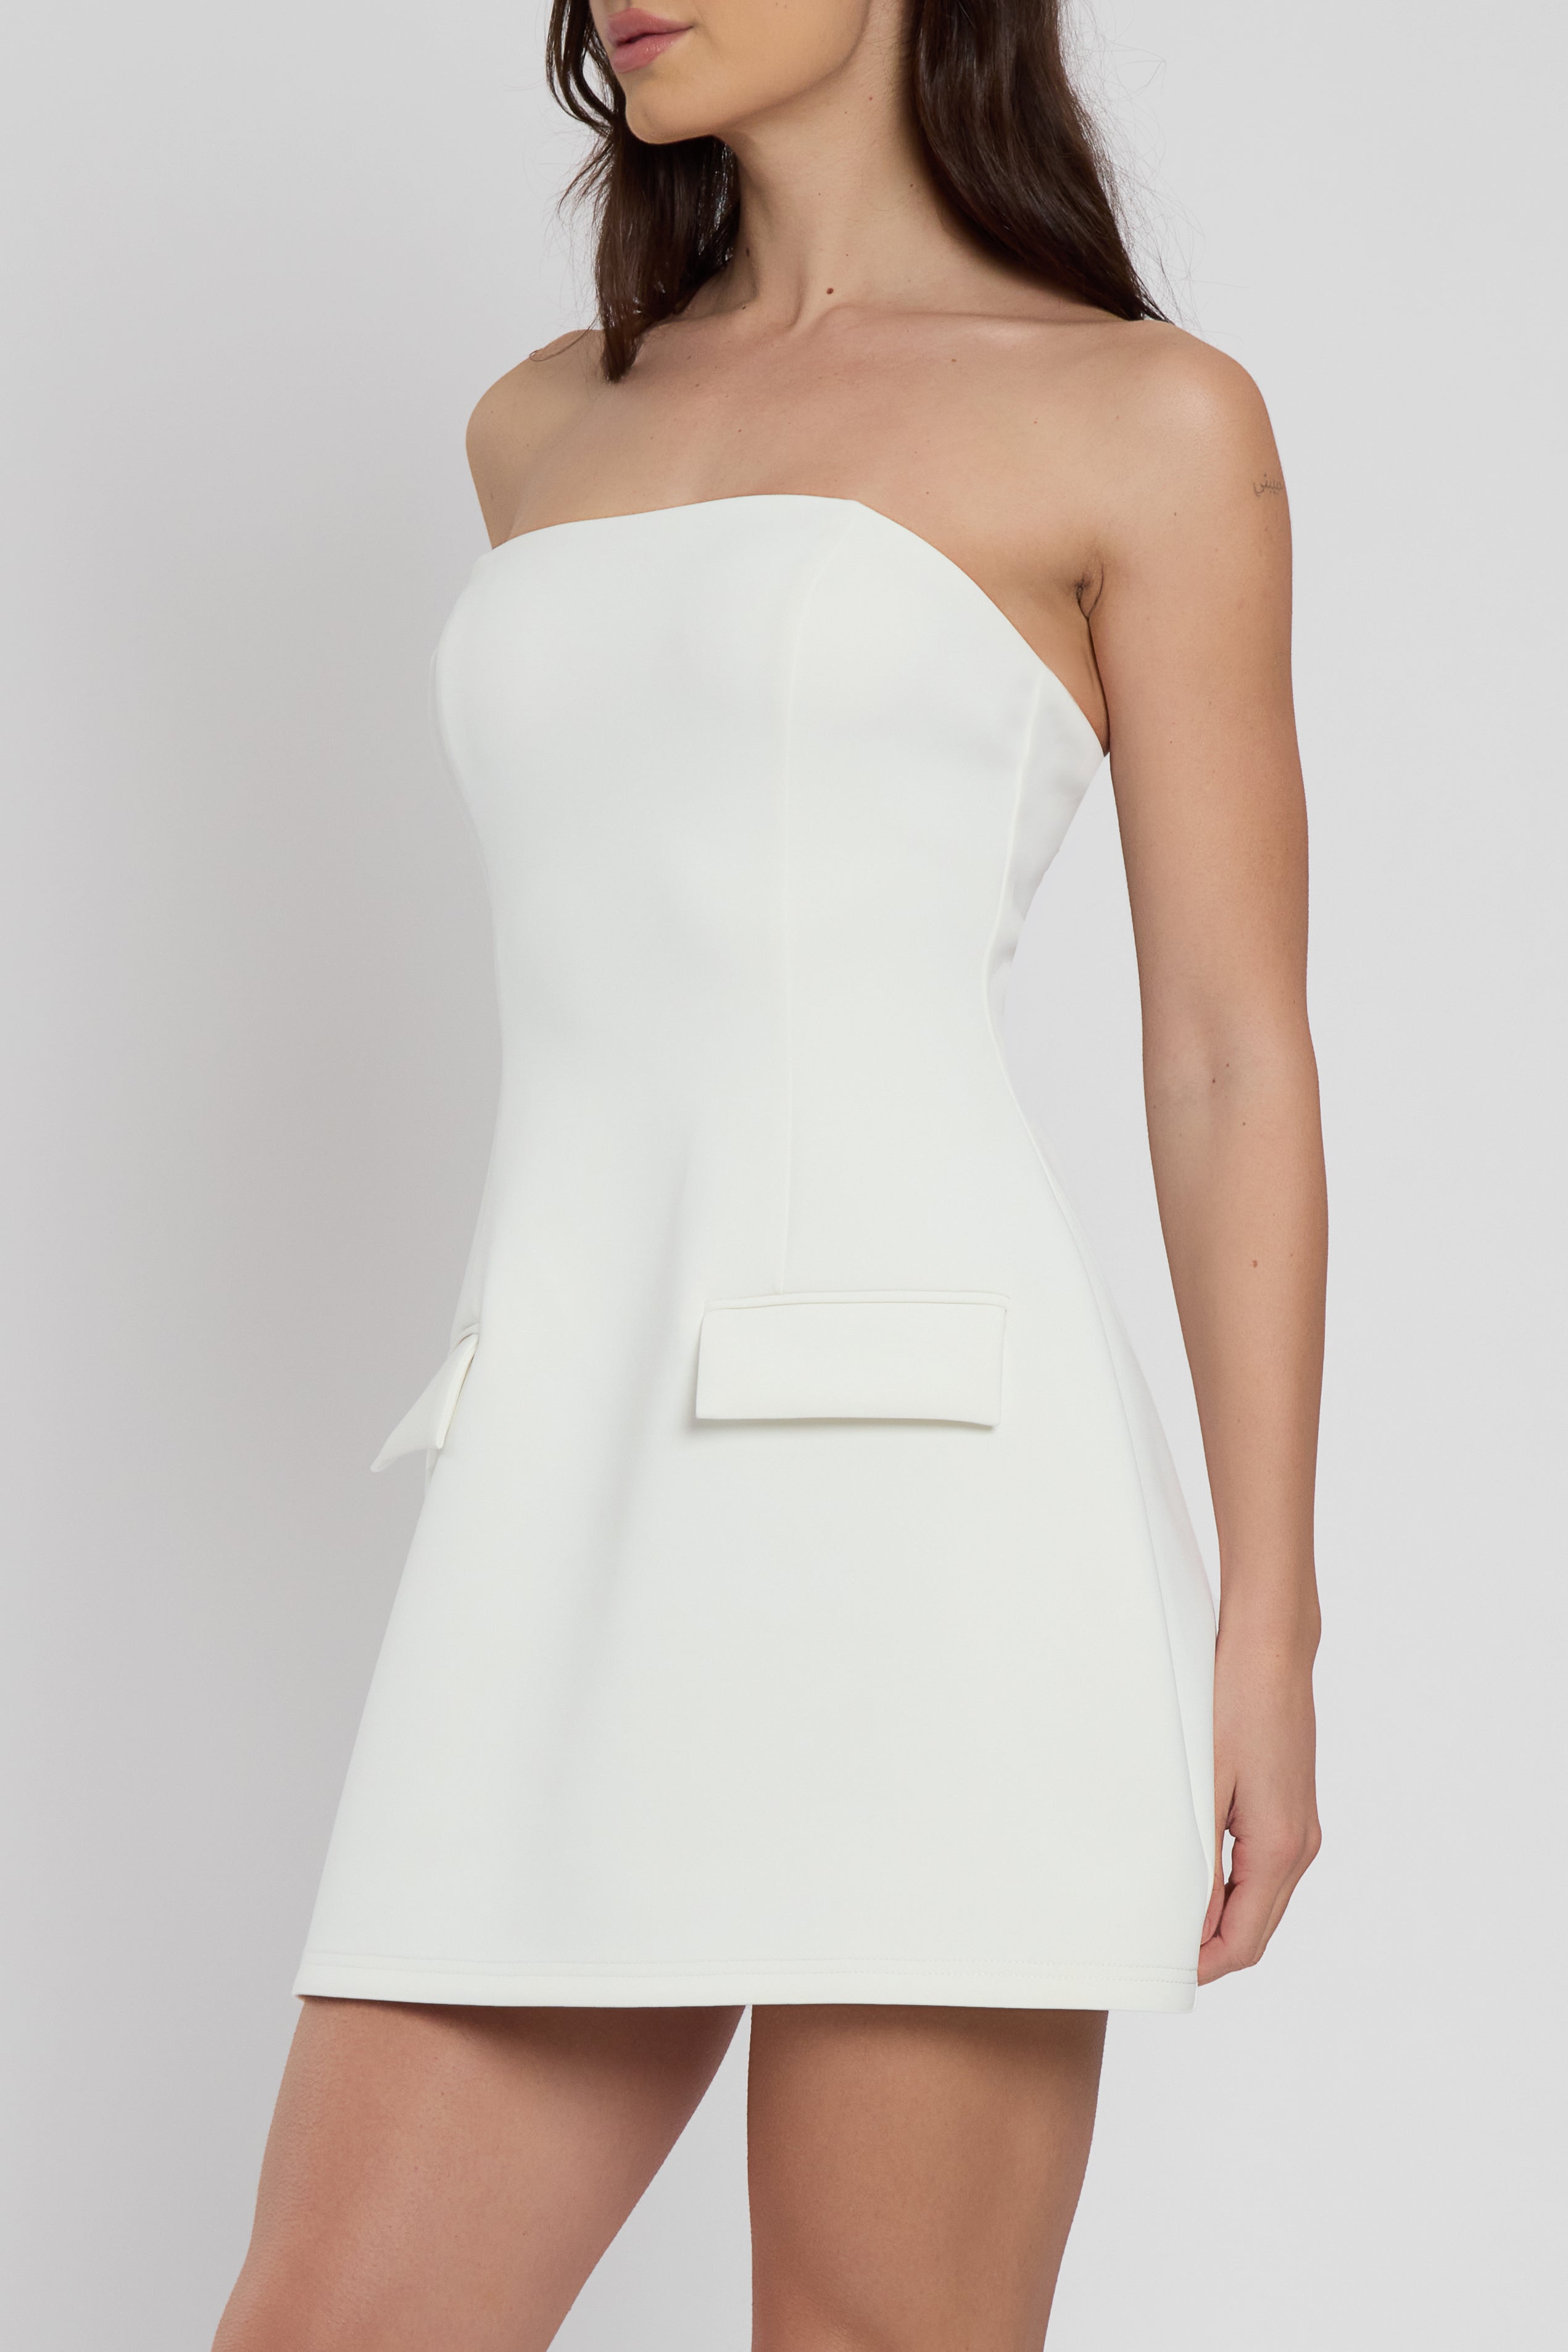 Solene Strapless Pocket Mini Dress - White.